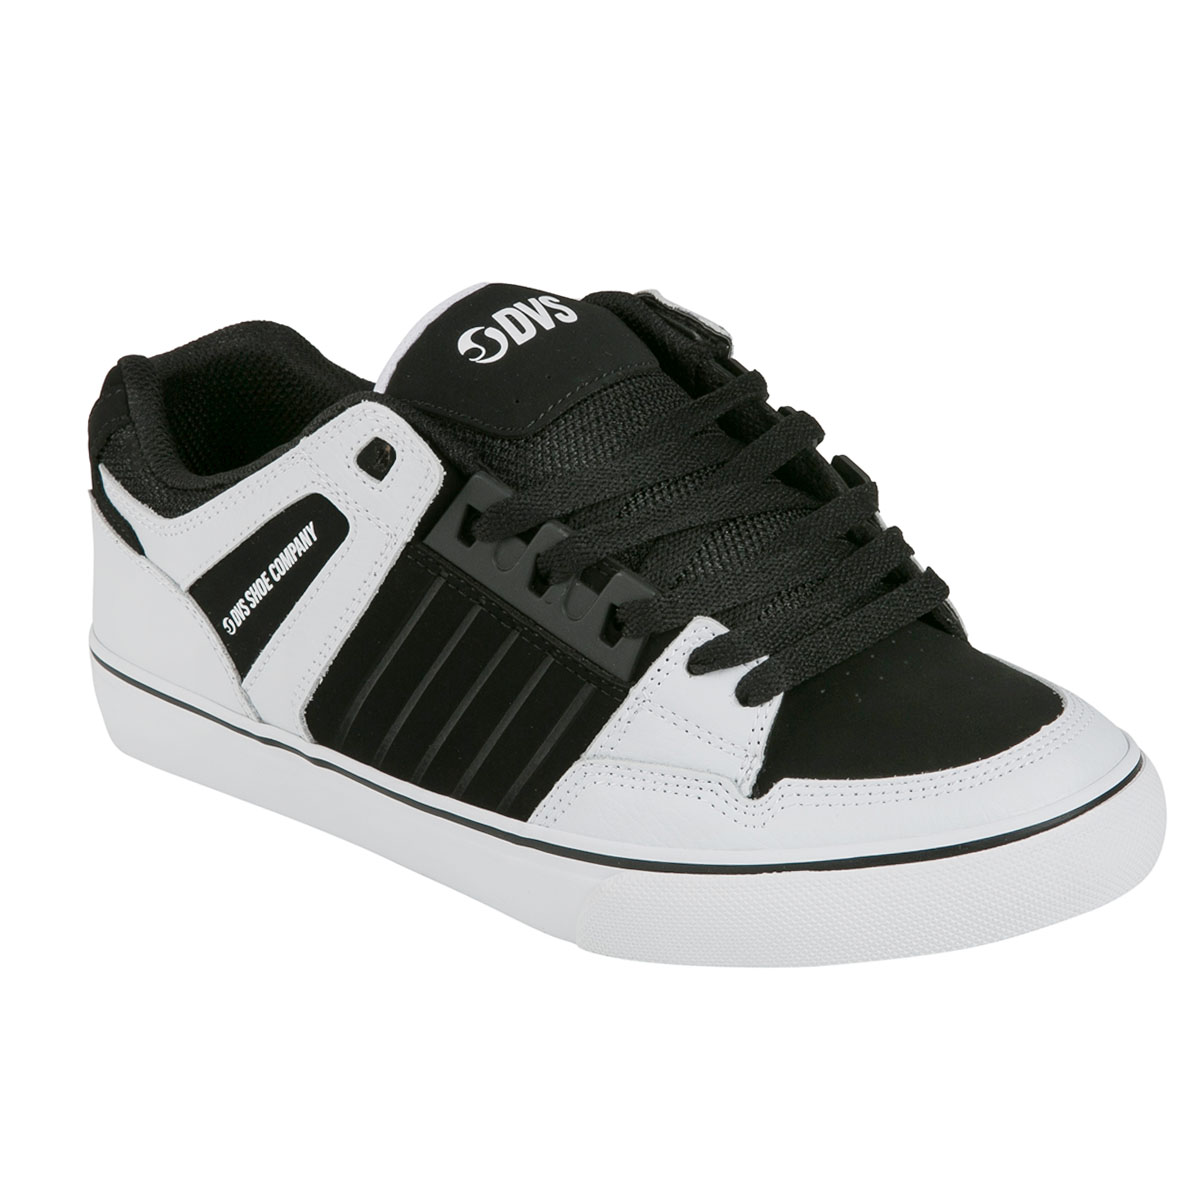 DVS Chaussures Celsius CT Black White Nubuck